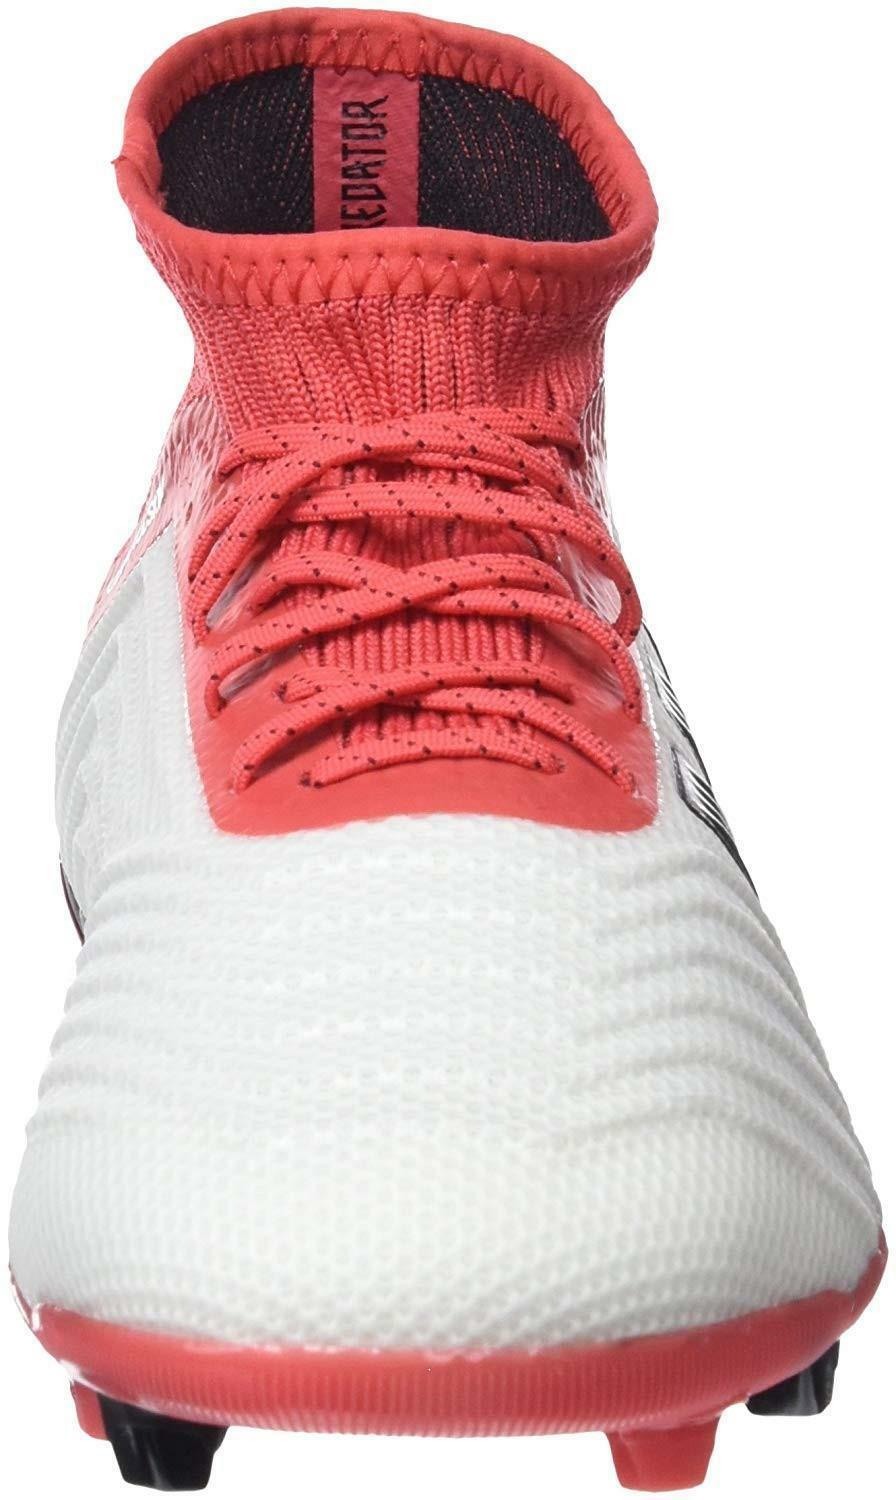 adidas adidas predator 18.1 fg j scarpe da calcio bambino bianche rosse cp8873